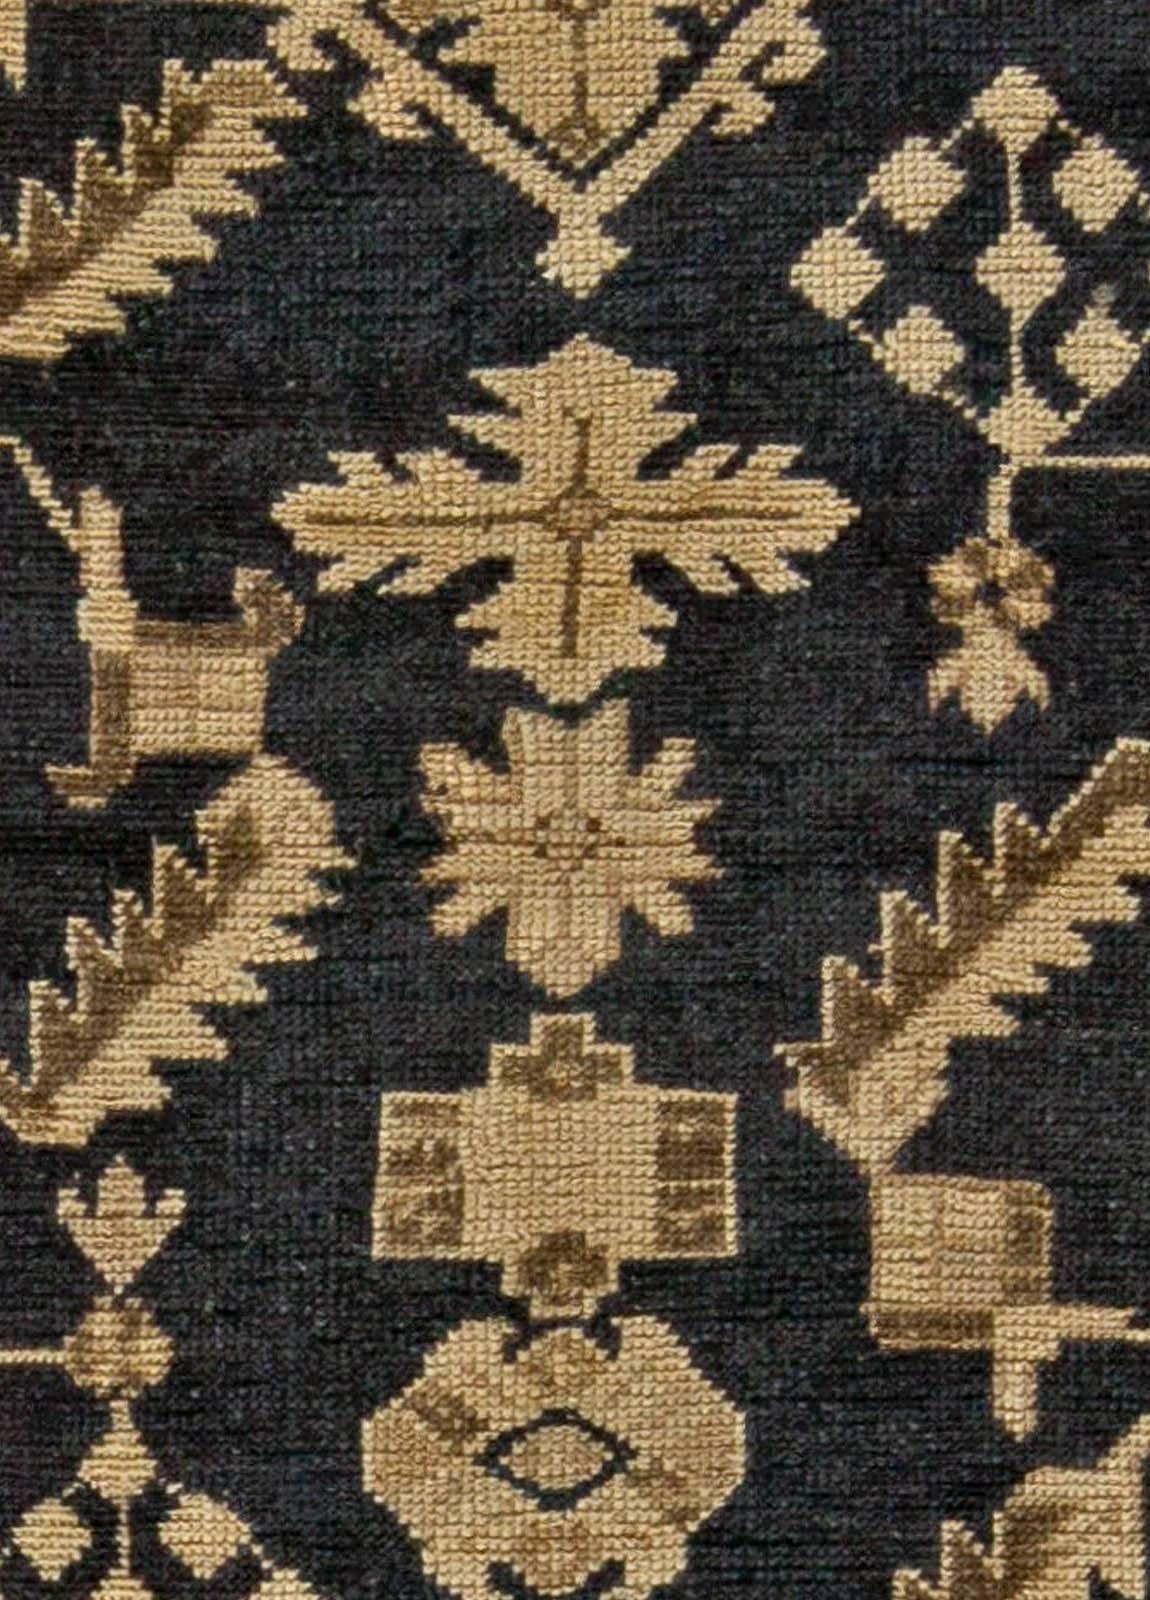 Early 20th century Turkish Oushak botanic handmade wool rug
Size: 6'0